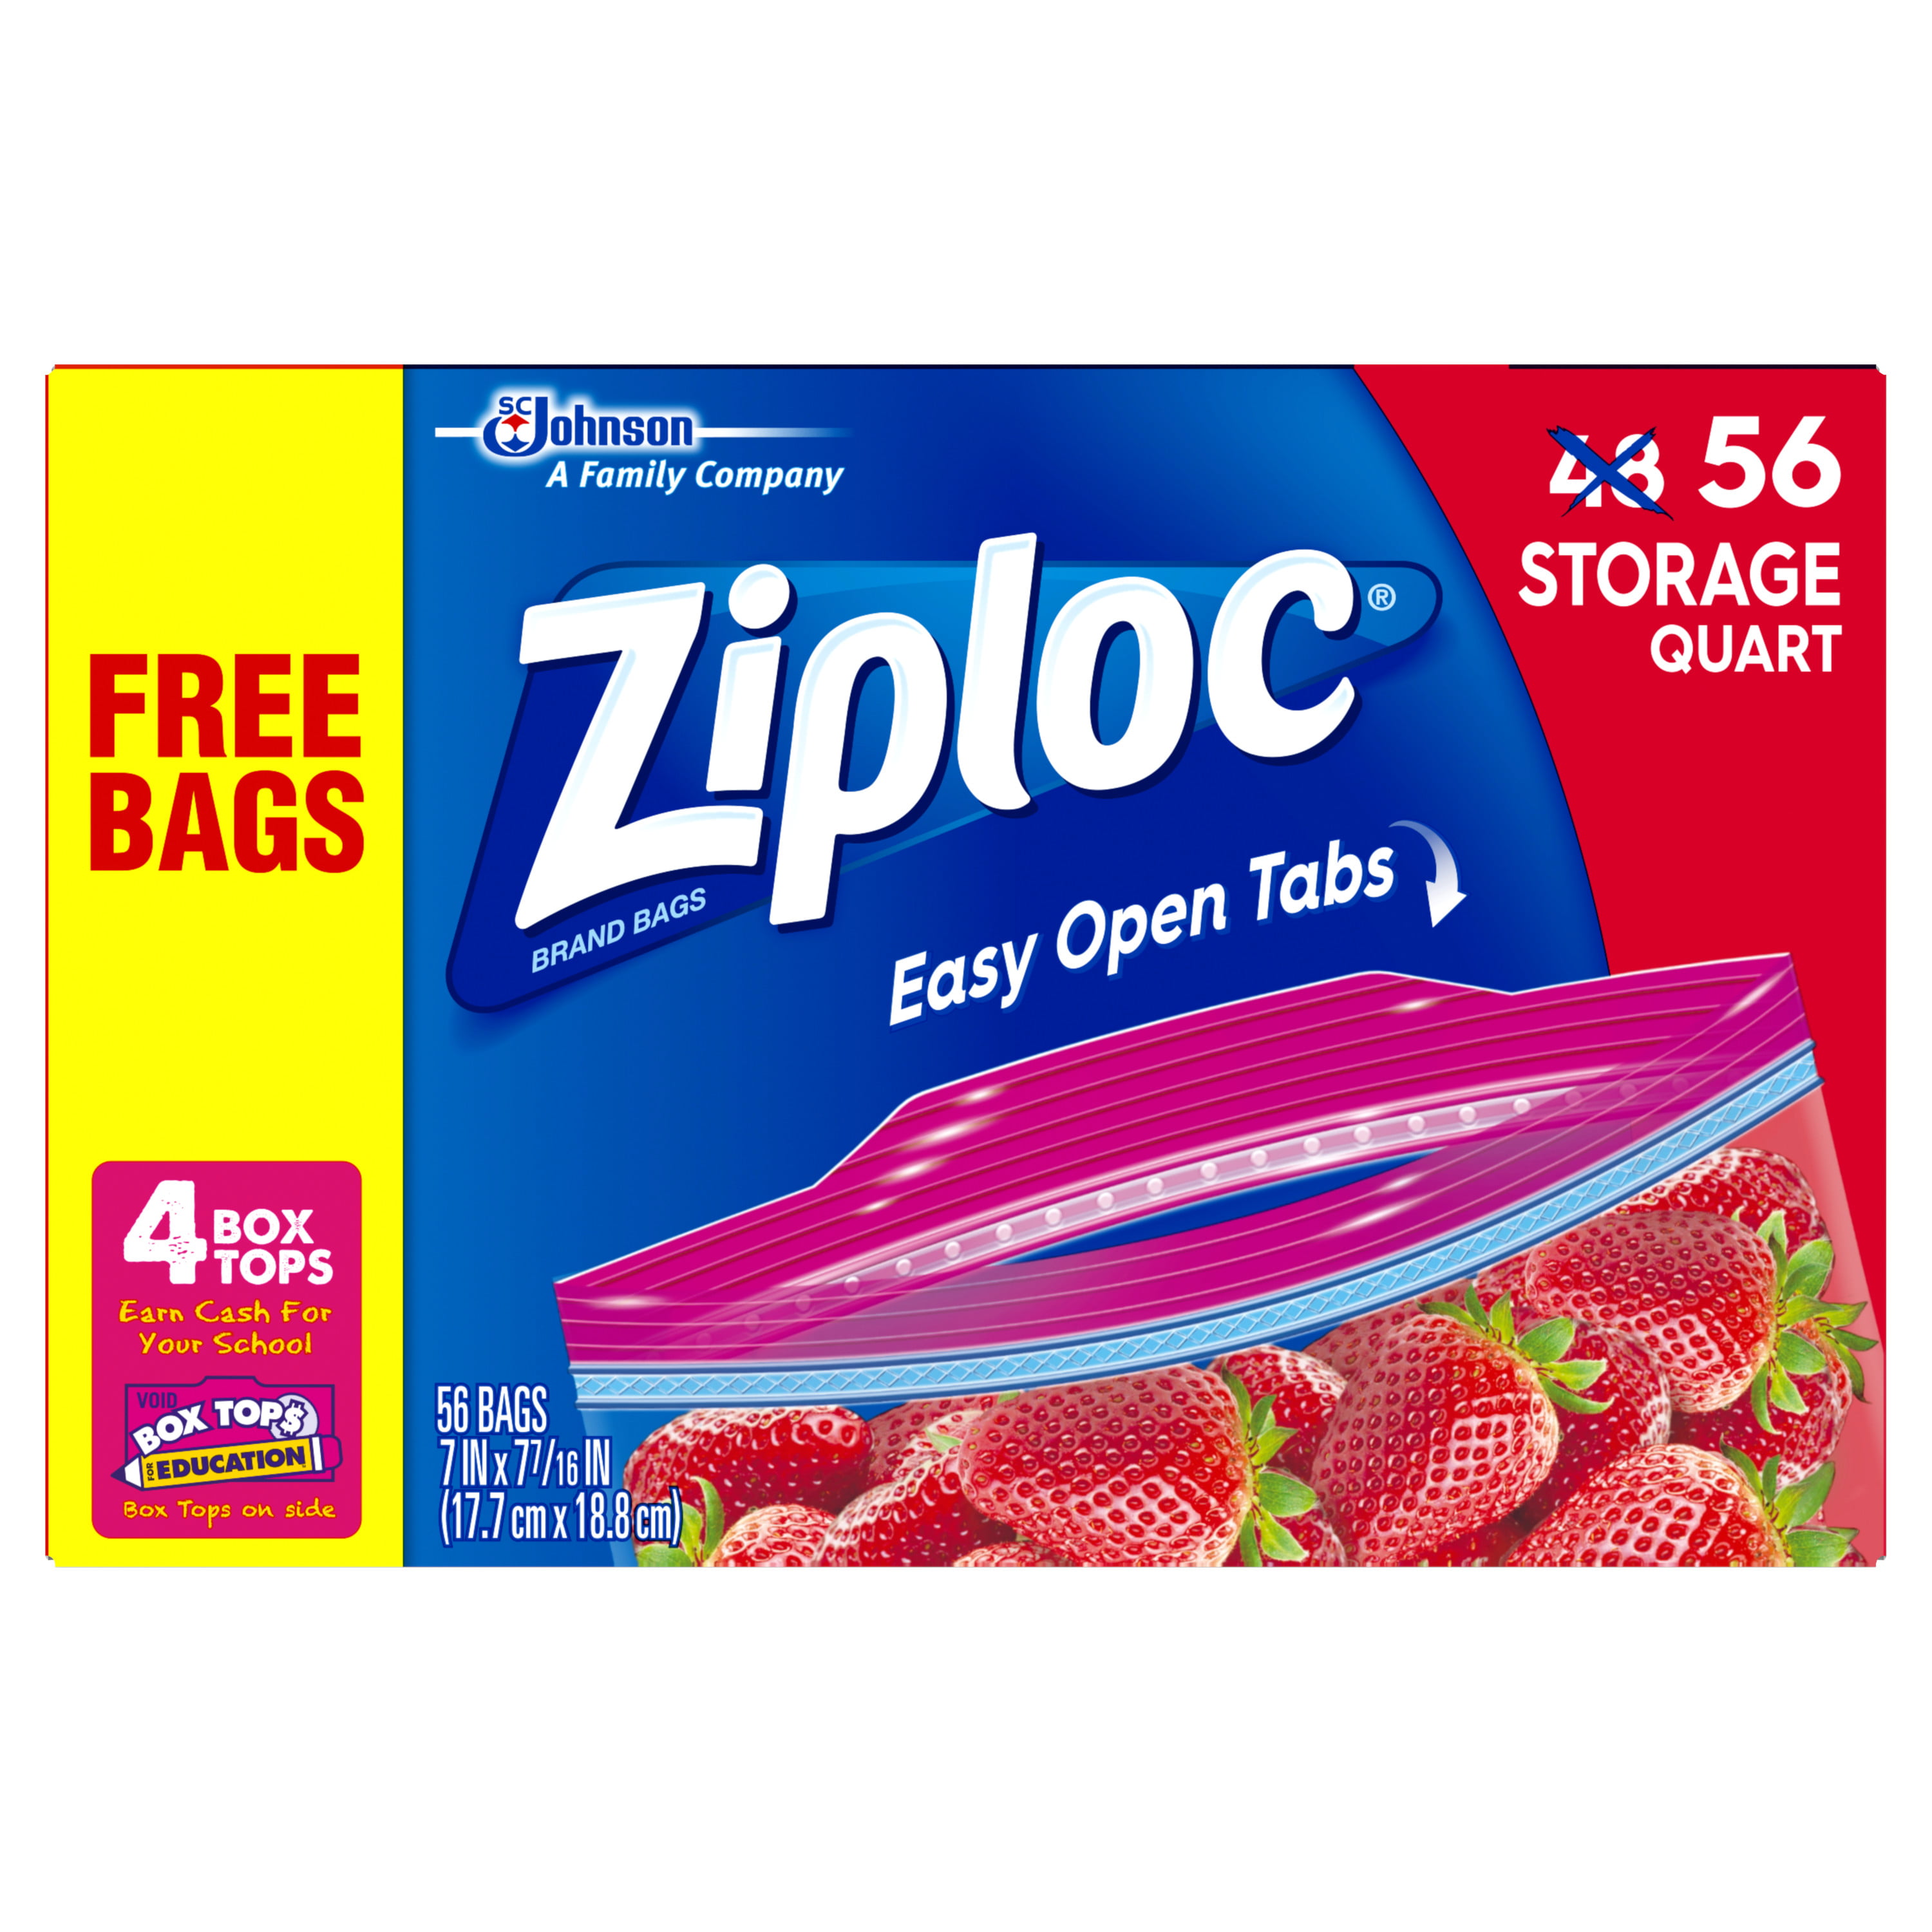 Ziploc Double Zipper Quart Storage Bags - Shop Storage Bags at H-E-B